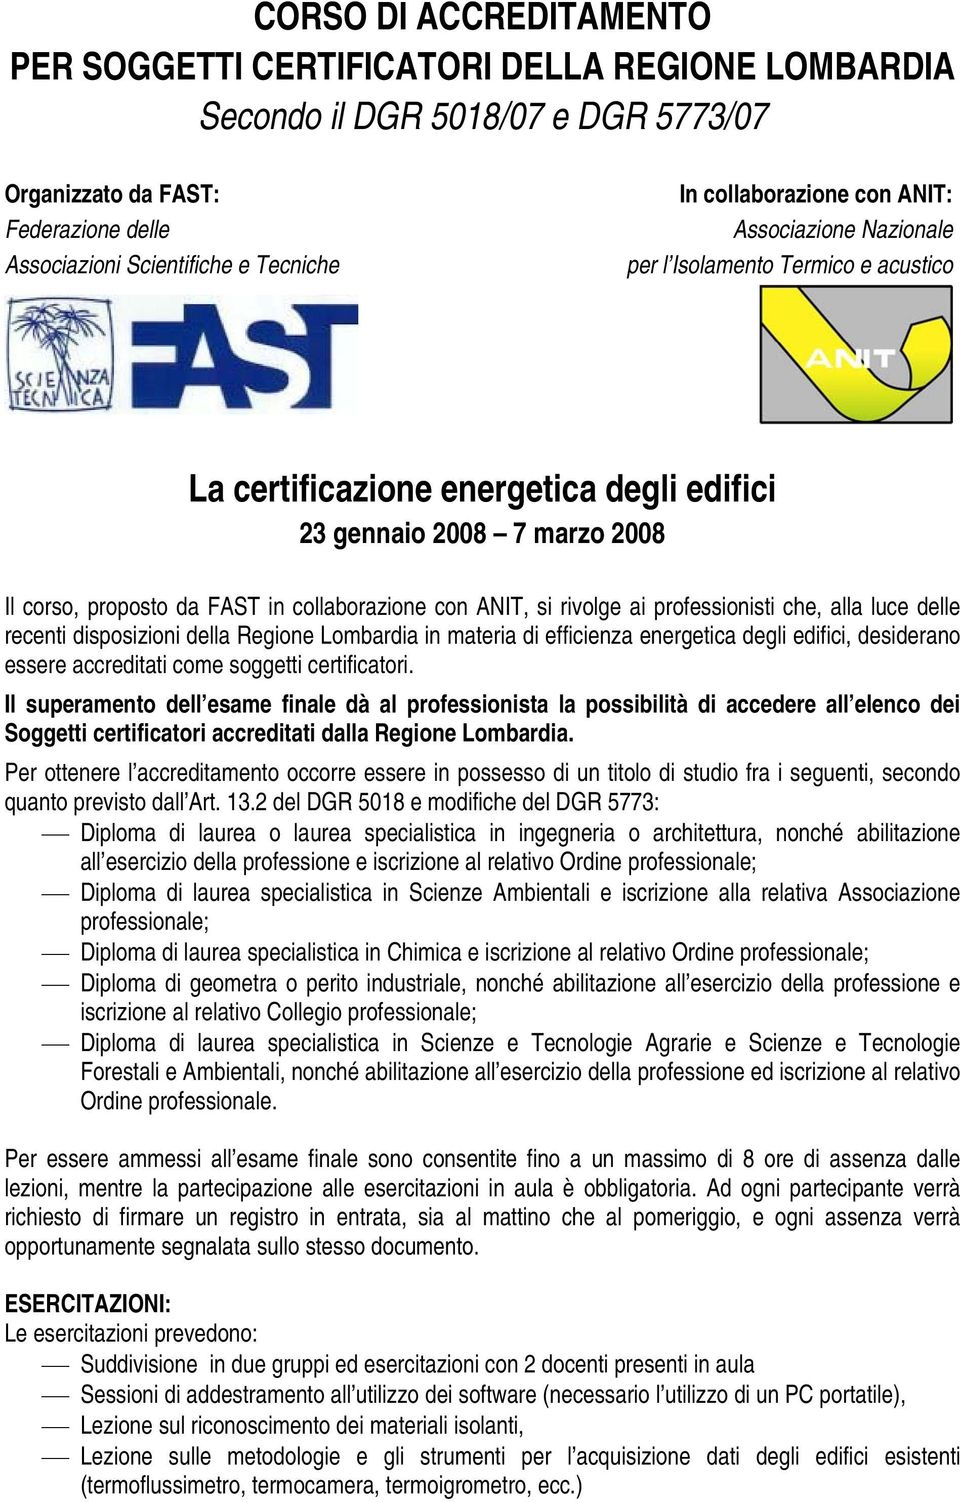 con ANIT, si rivolge ai professionisti che, alla luce delle recenti disposizioni della Regione Lombardia in materia di efficienza energetica degli edifici, desiderano essere accreditati come soggetti